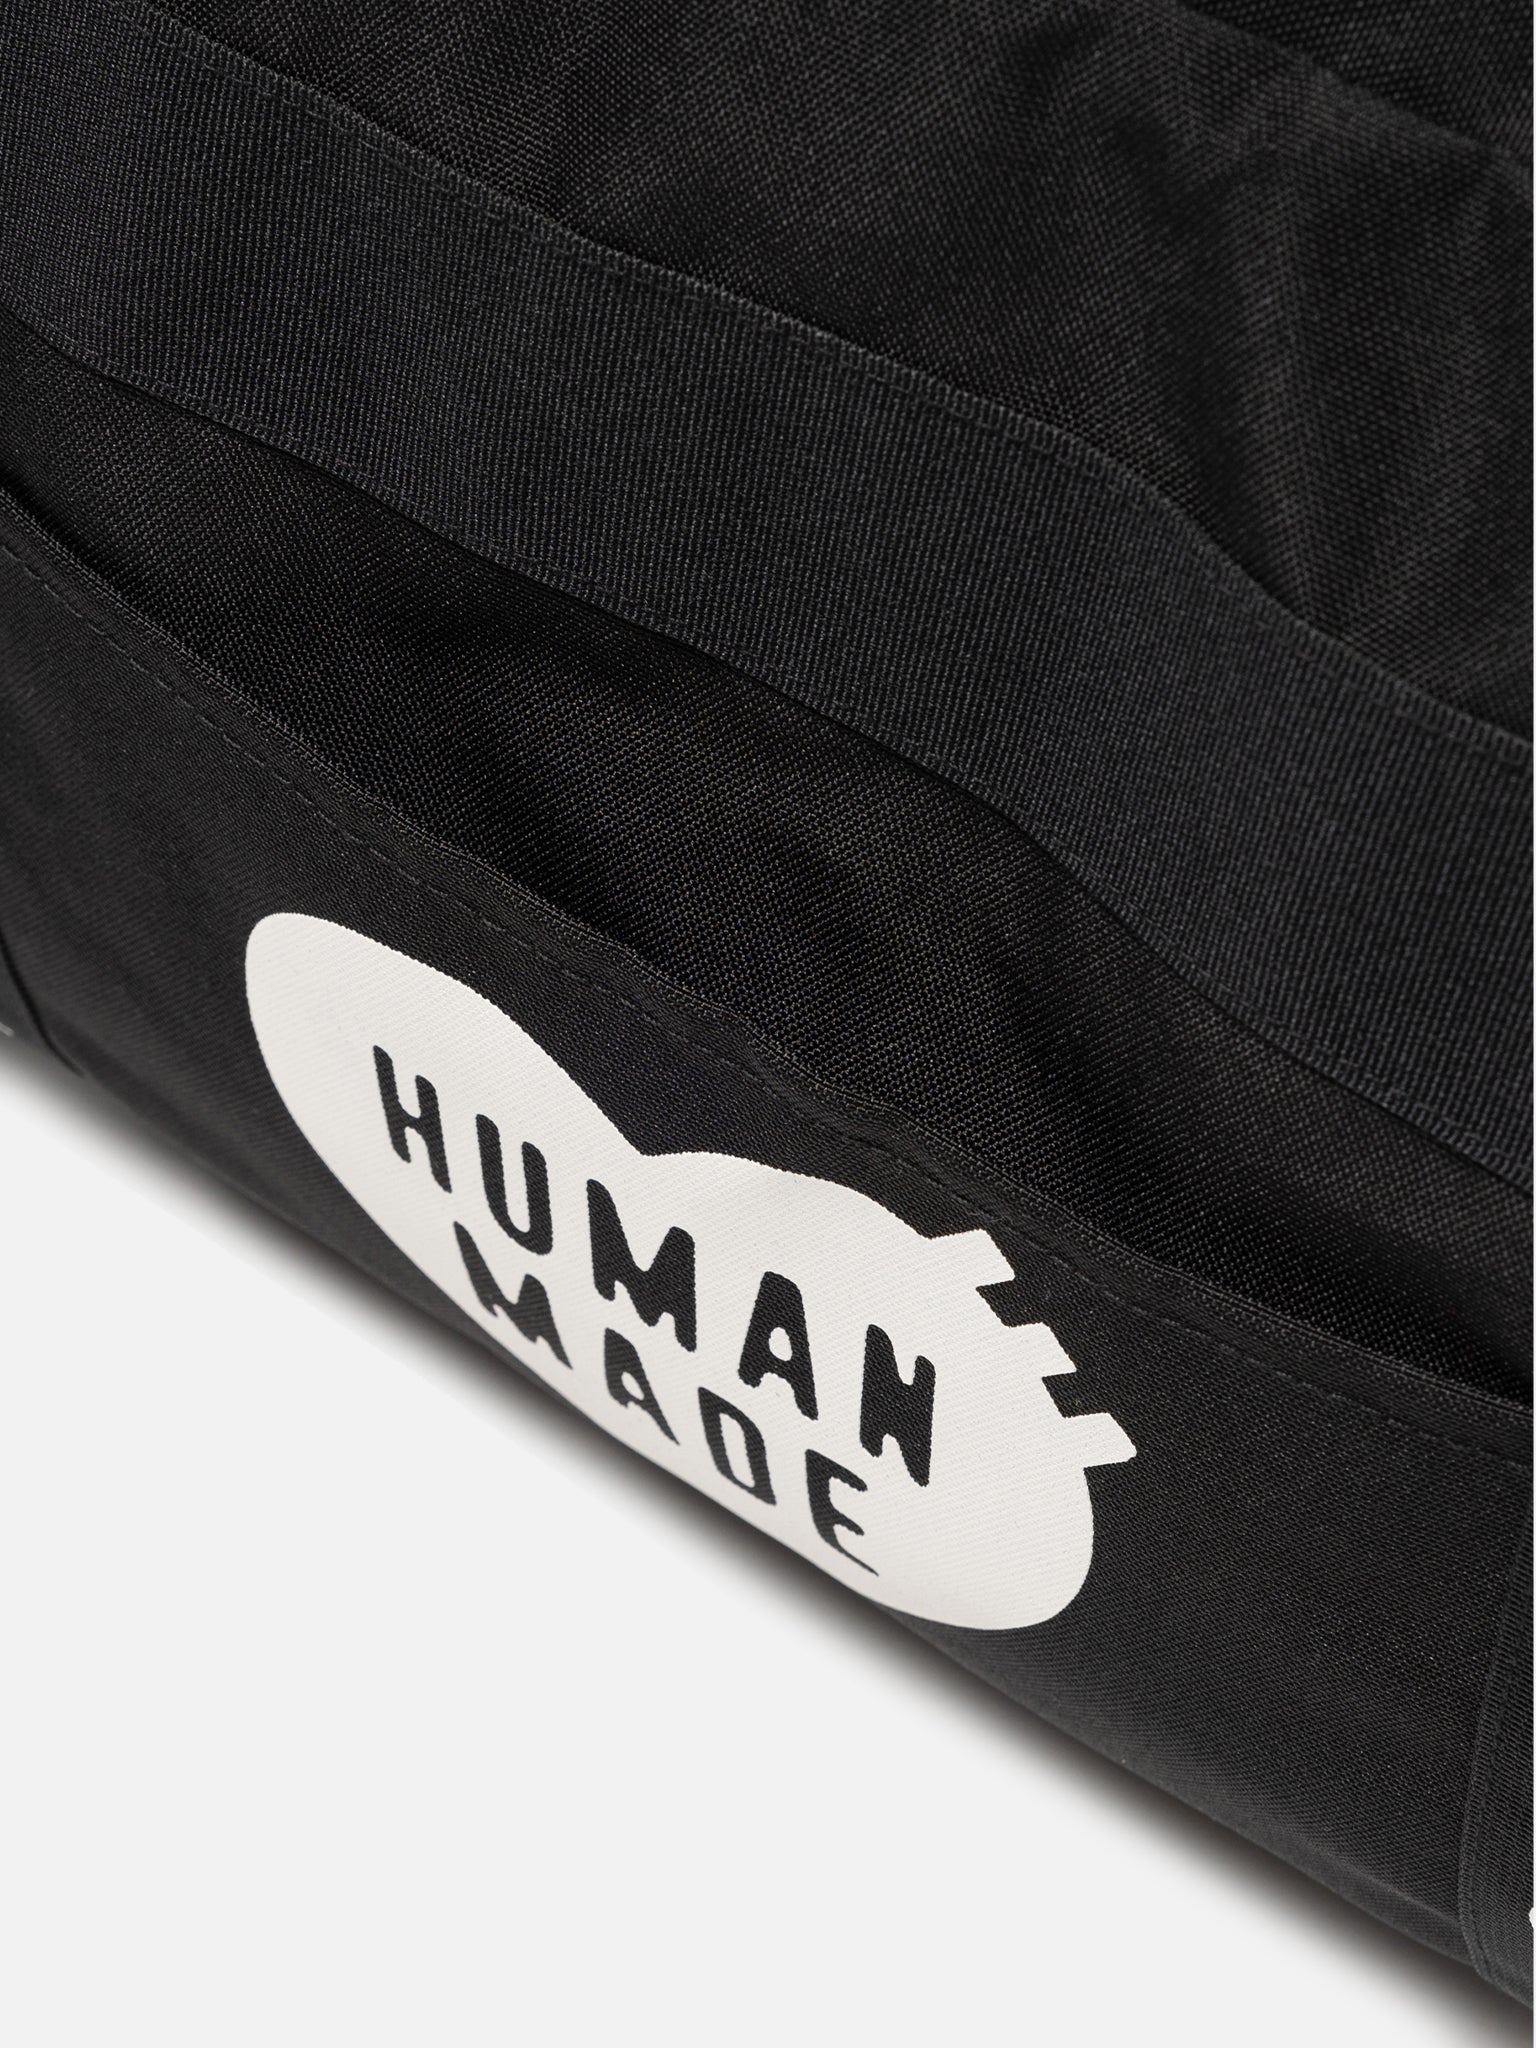 Human Made Skate Duffle Bag